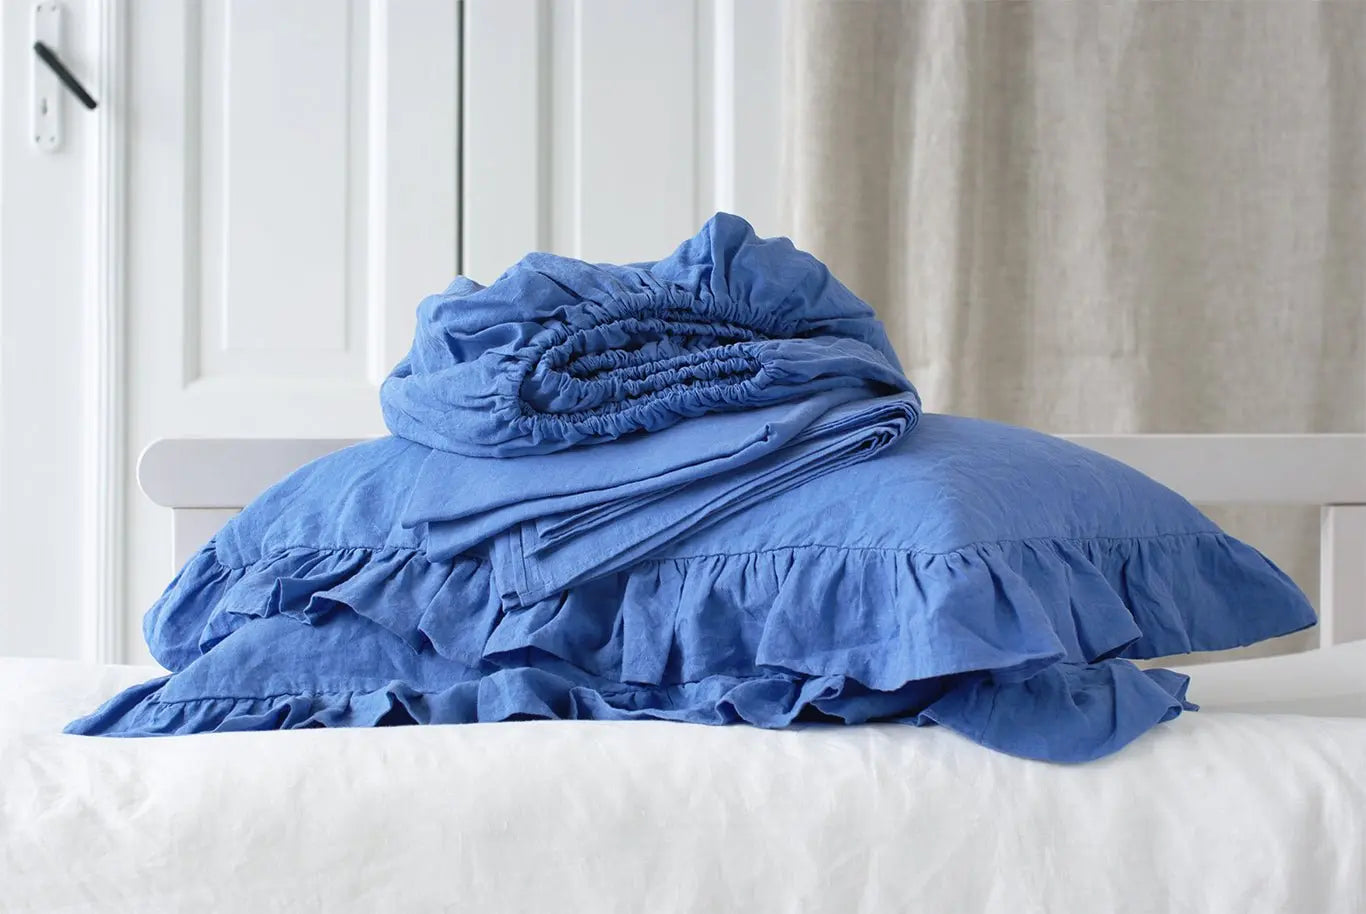 Linen Sheet Set with Ruffled Pillowcases - Epic Linen luxury linen